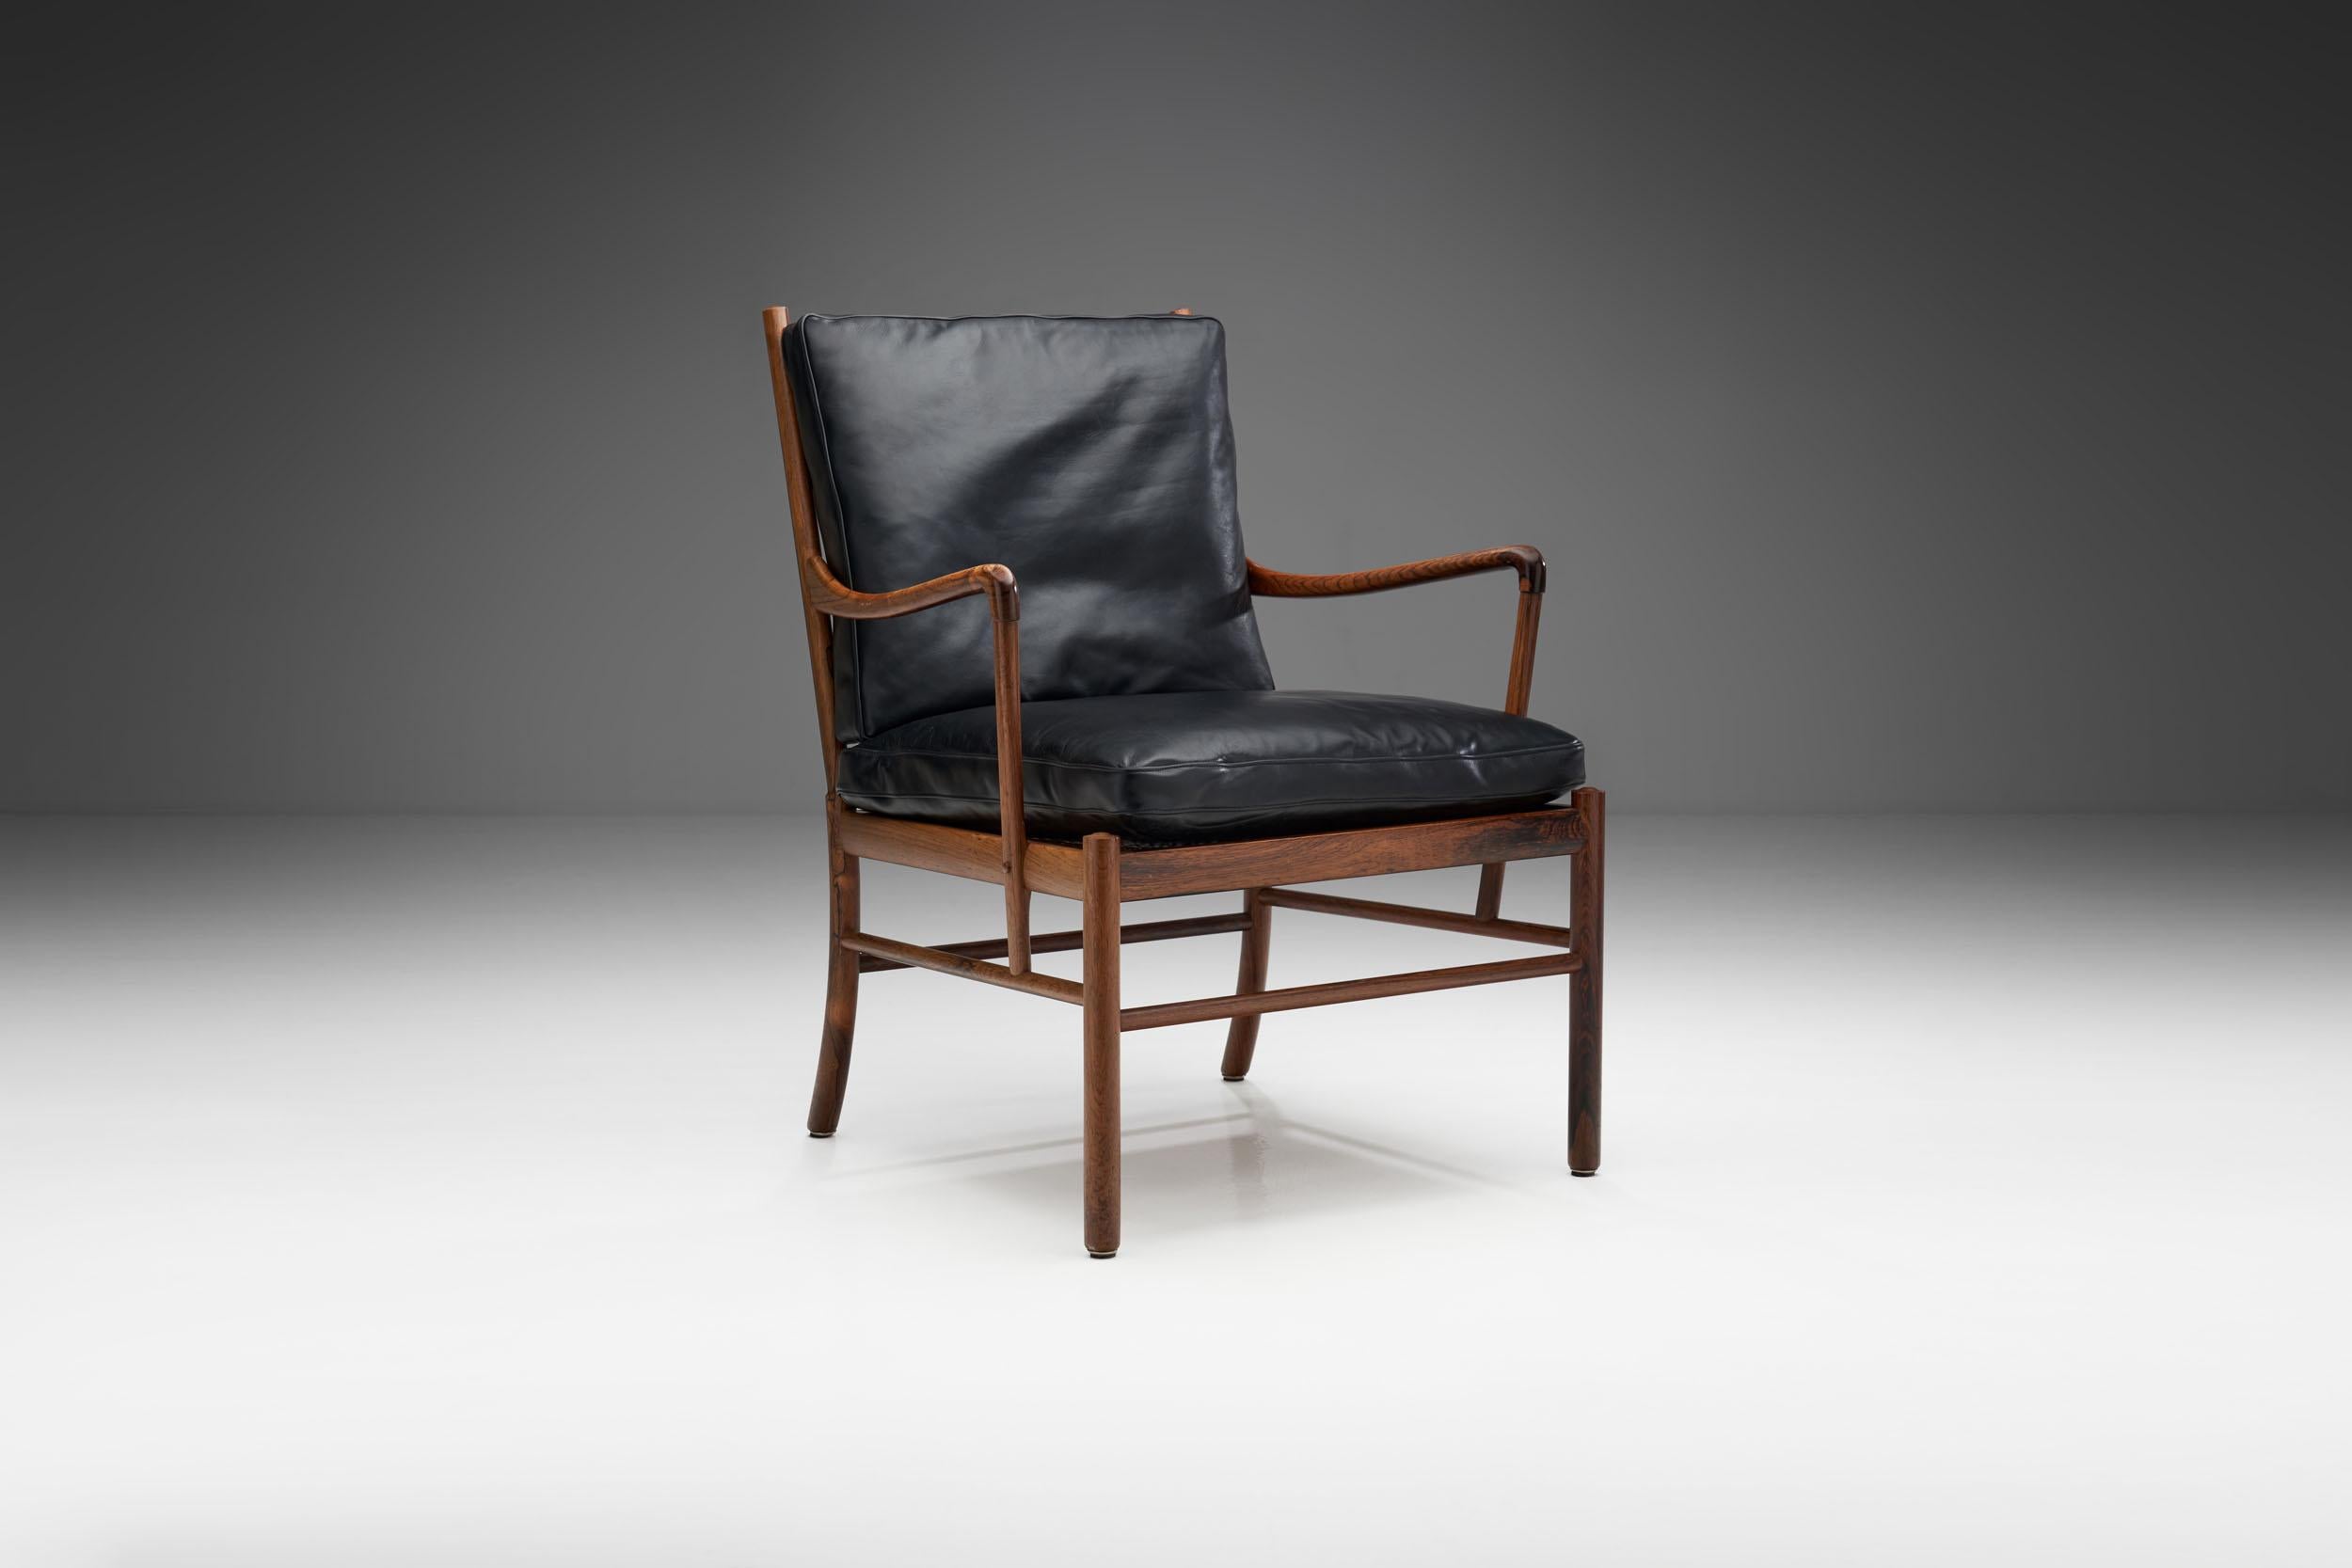 La chaise Coloni est l'une des créations phares du designer danois Ole Wanscher. Elle s'inspire du mobilier colonial britannique et français des XVIIIe et XIXe siècles. Wanscher n'était pas d'accord avec le rejet du passé par les modernistes et